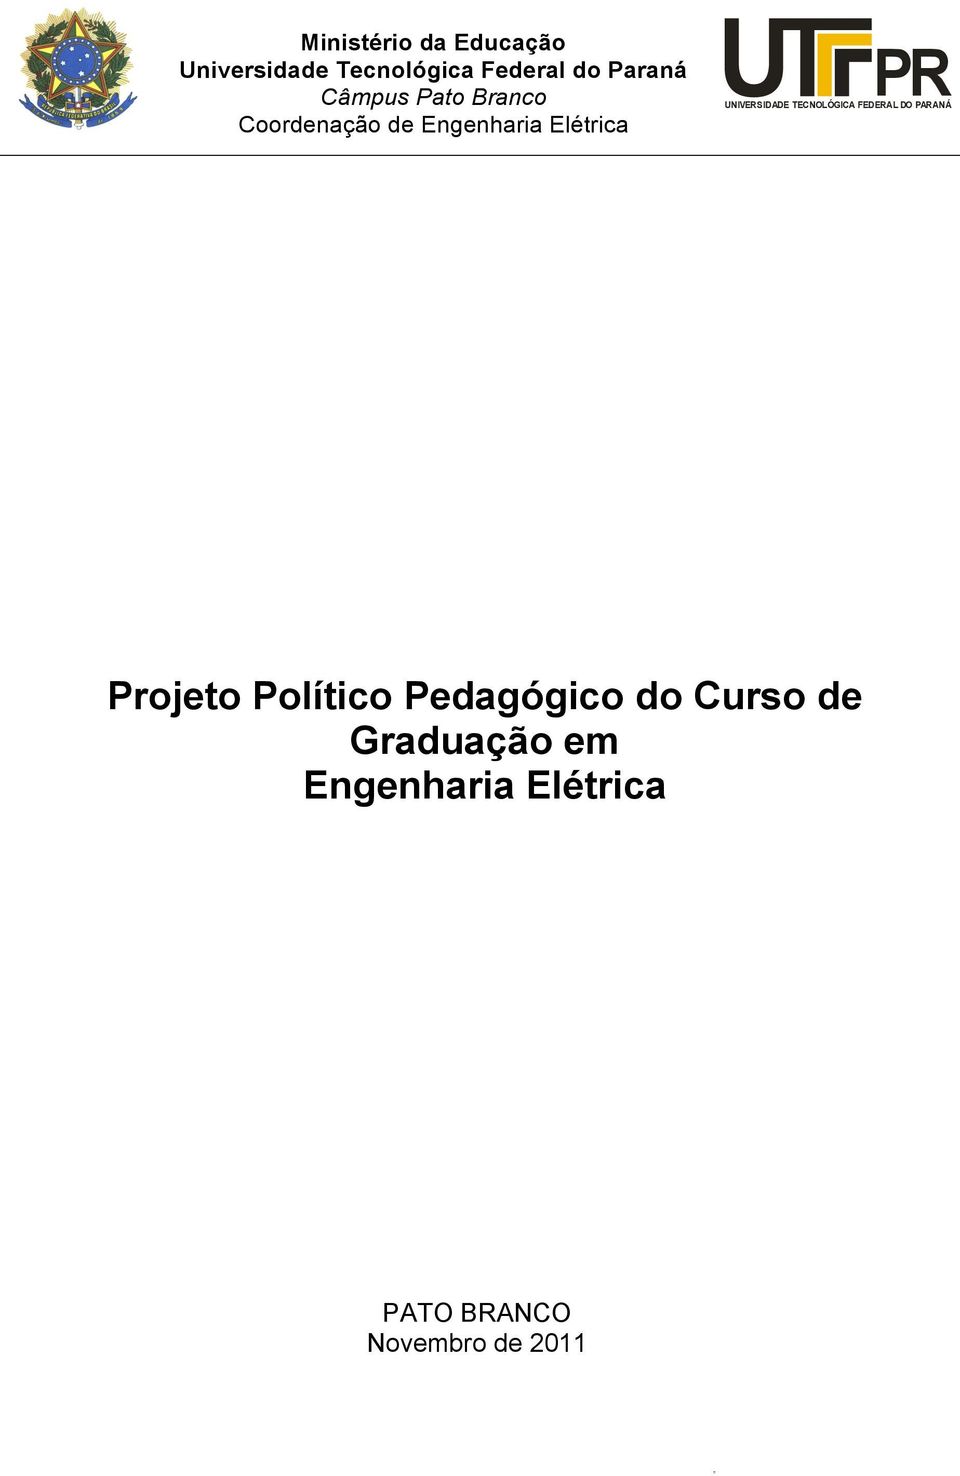 UNIVERSIDADE TECNOLÓGICA FEDERAL DO PARANÁ Projeto Político